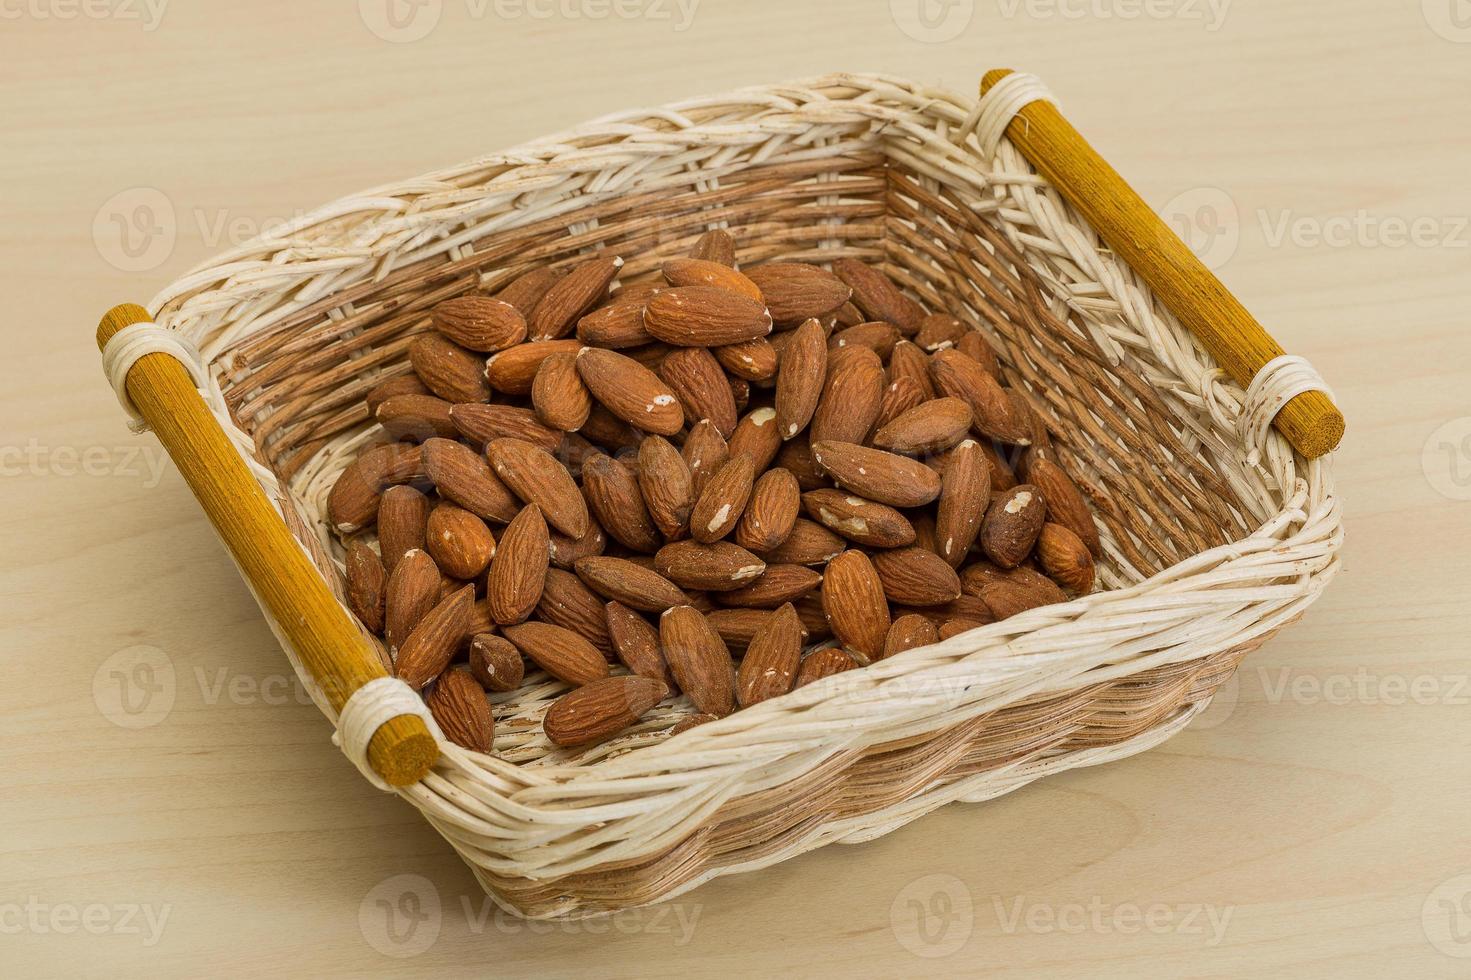 amandel noten in een kom foto